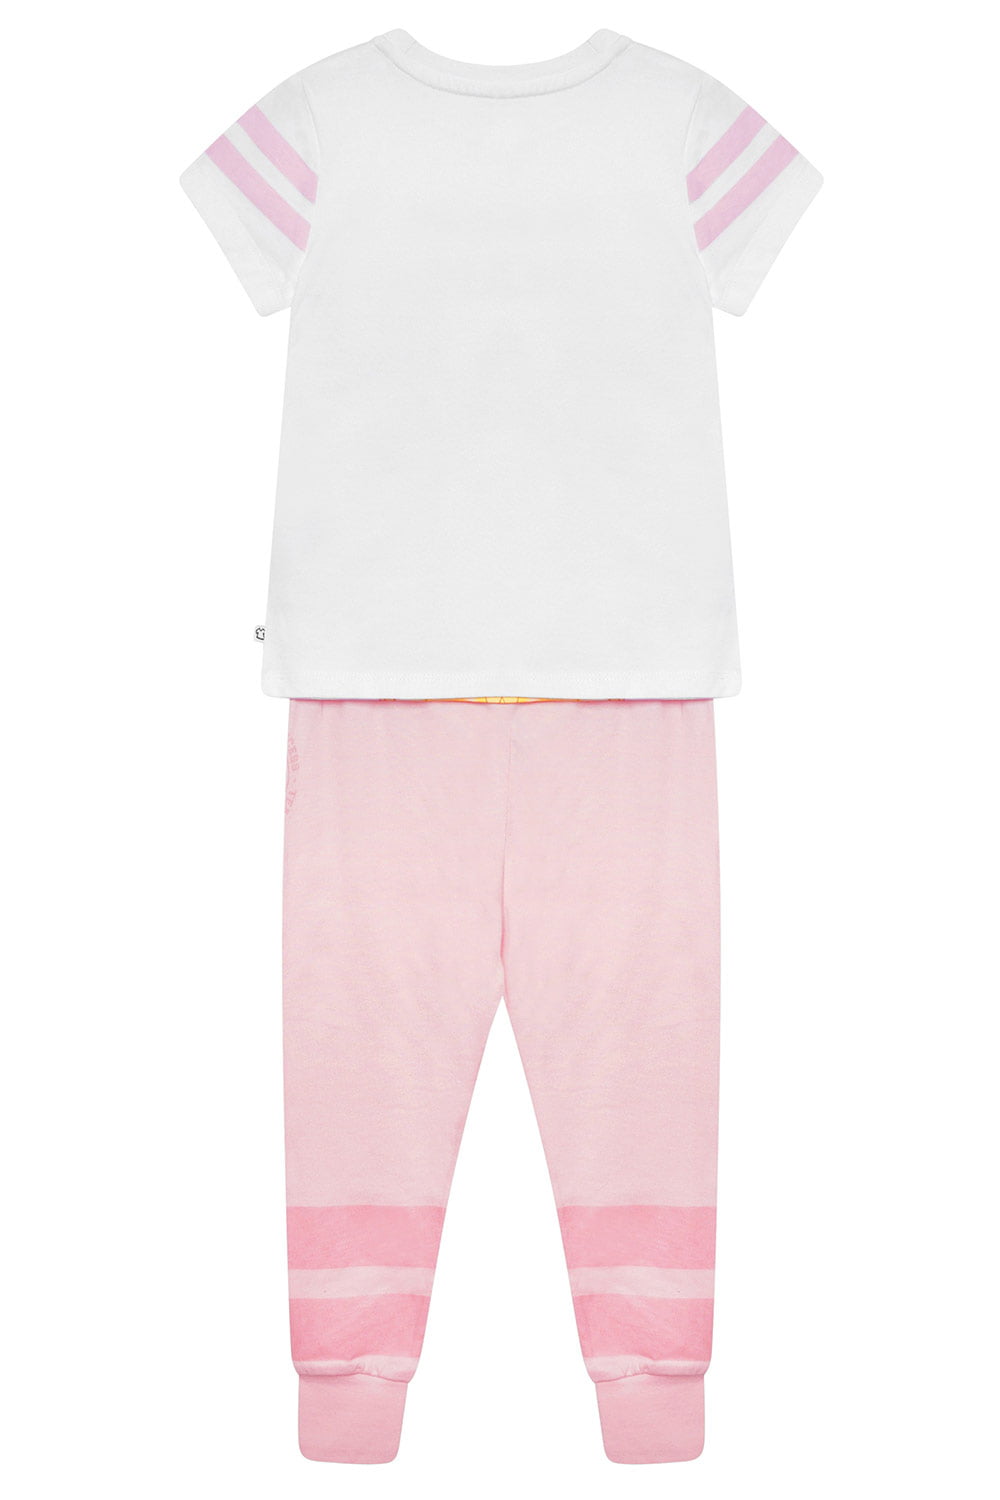 Disney Princesses Girls Pyjamas - Brand Threads